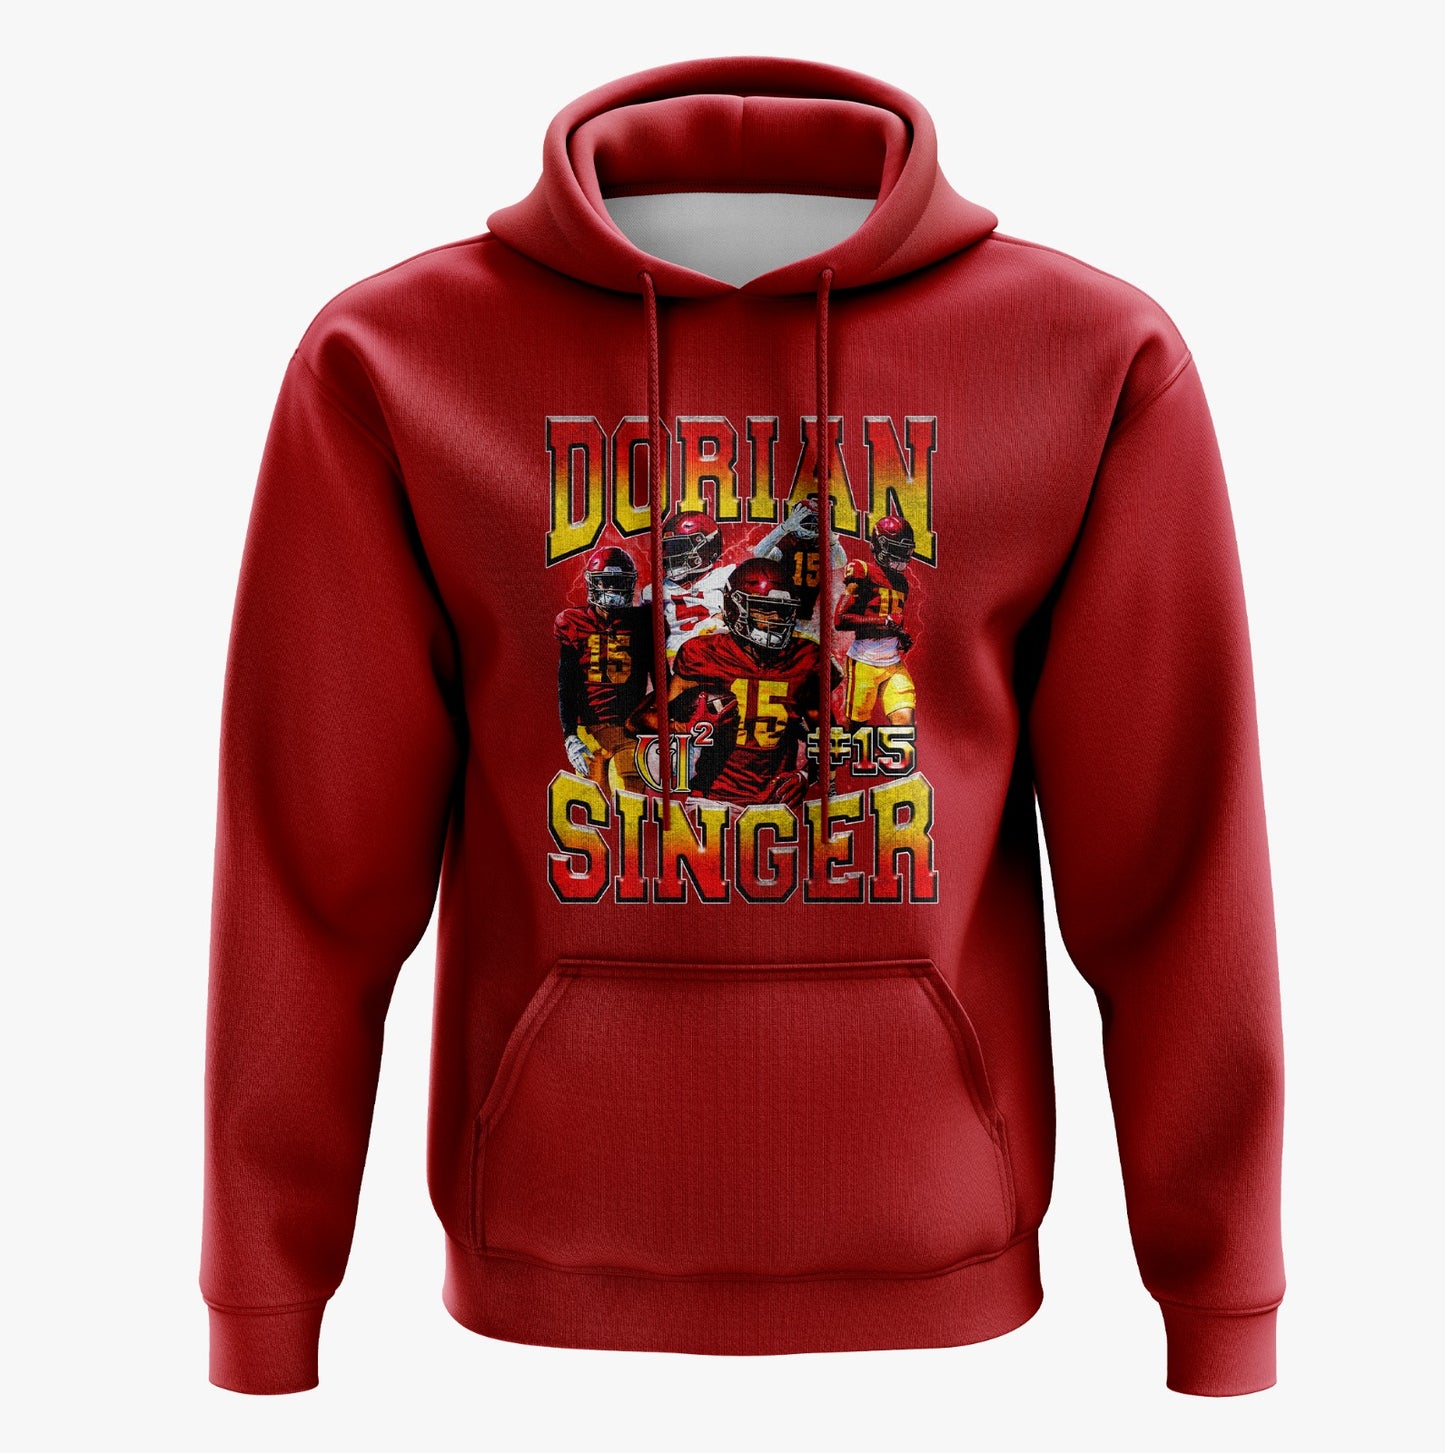 Dorian Singer Graphic Hooded sweatshirt